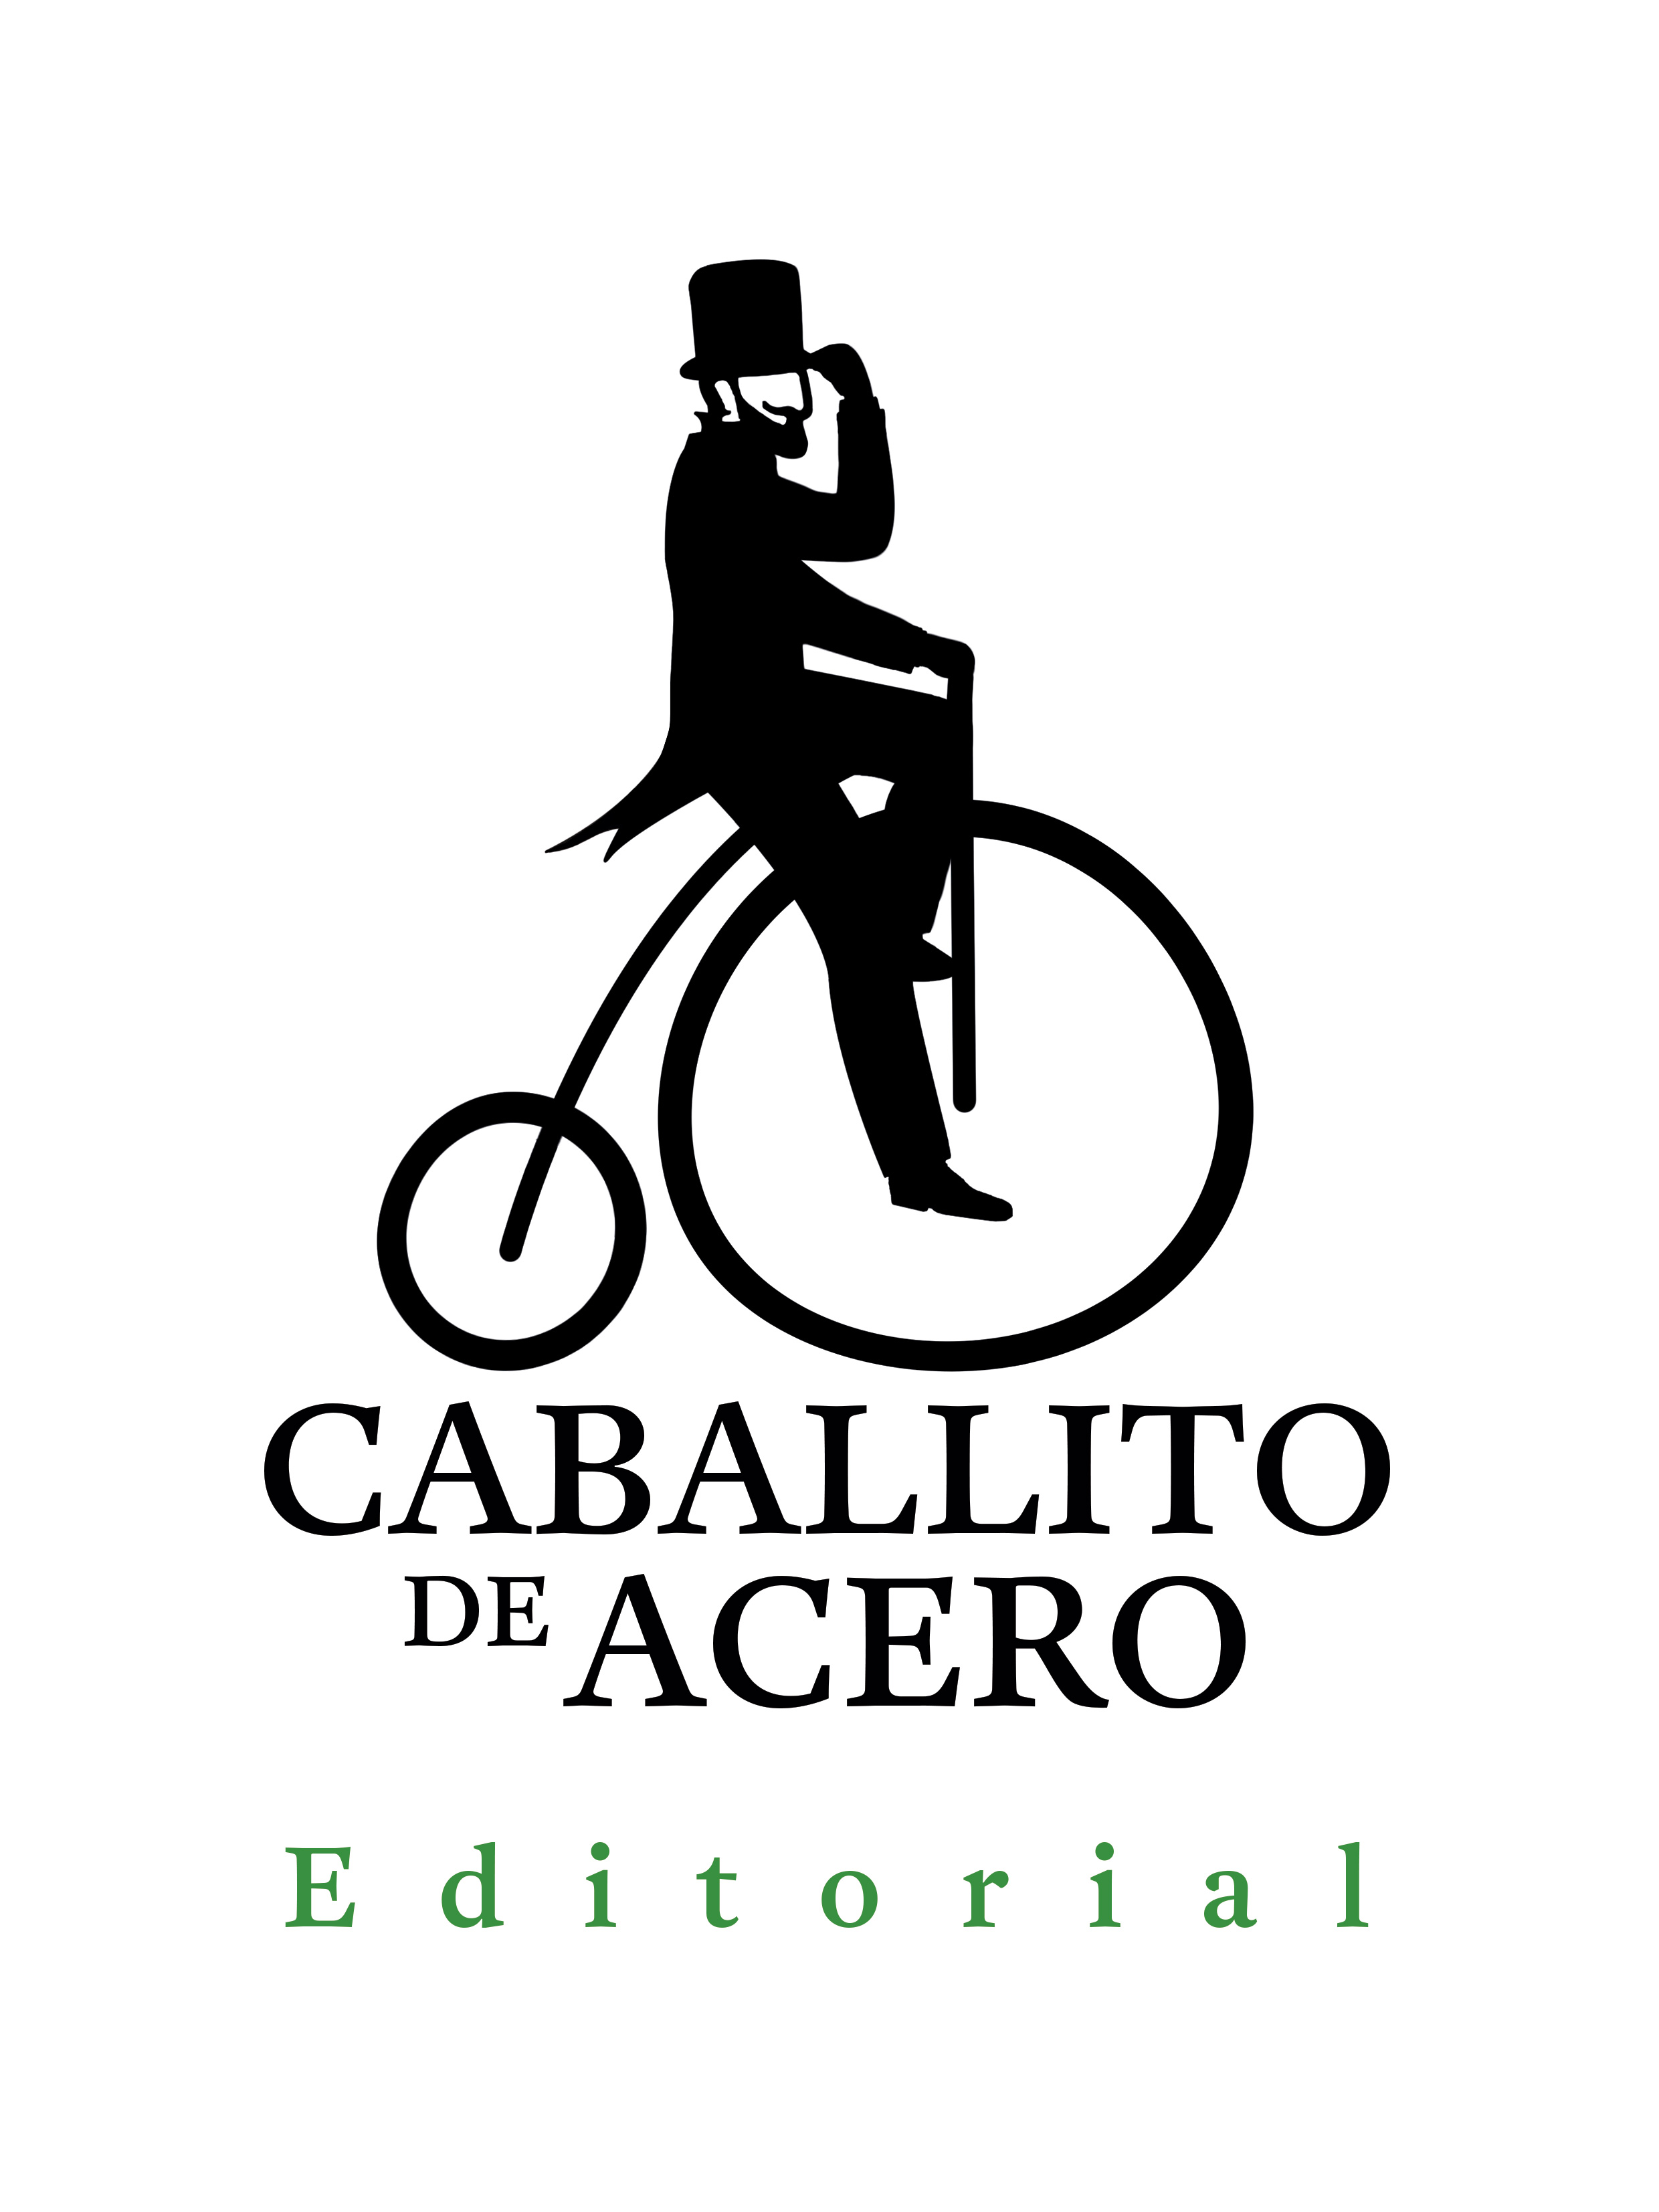 Editorial Caballito de Acero